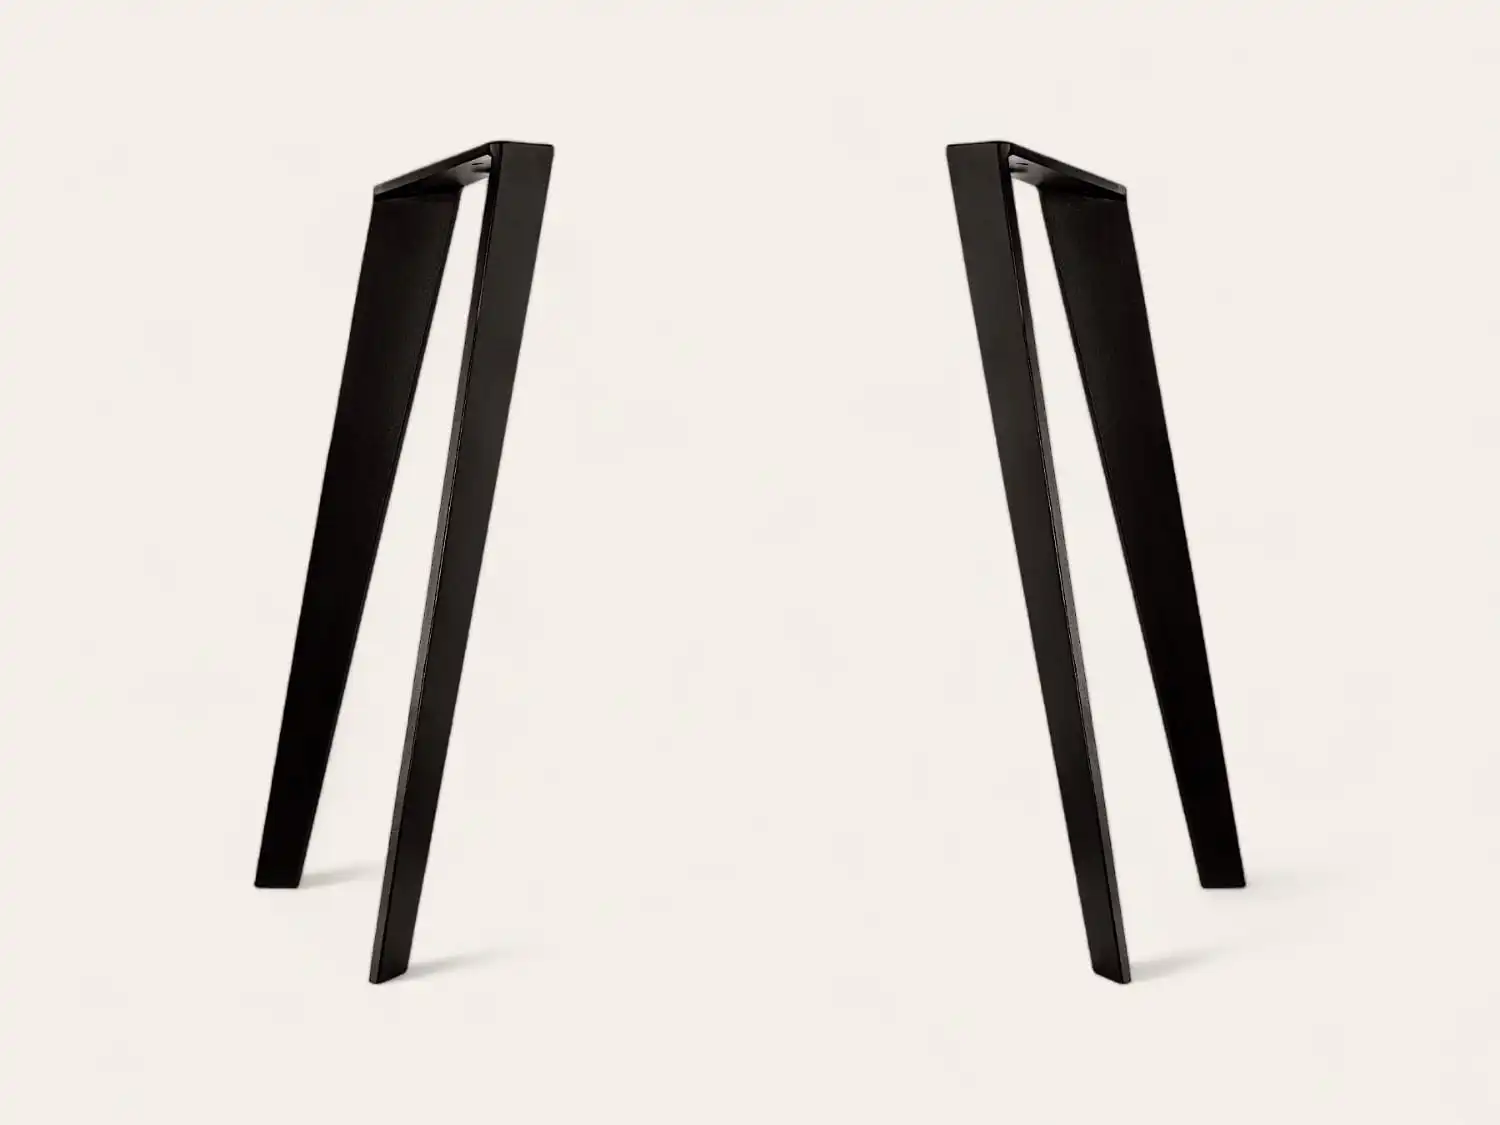 Une paire de pieds de table noirs de style cadre en A positionnés parallèlement les uns aux autres sur un fond blanc.